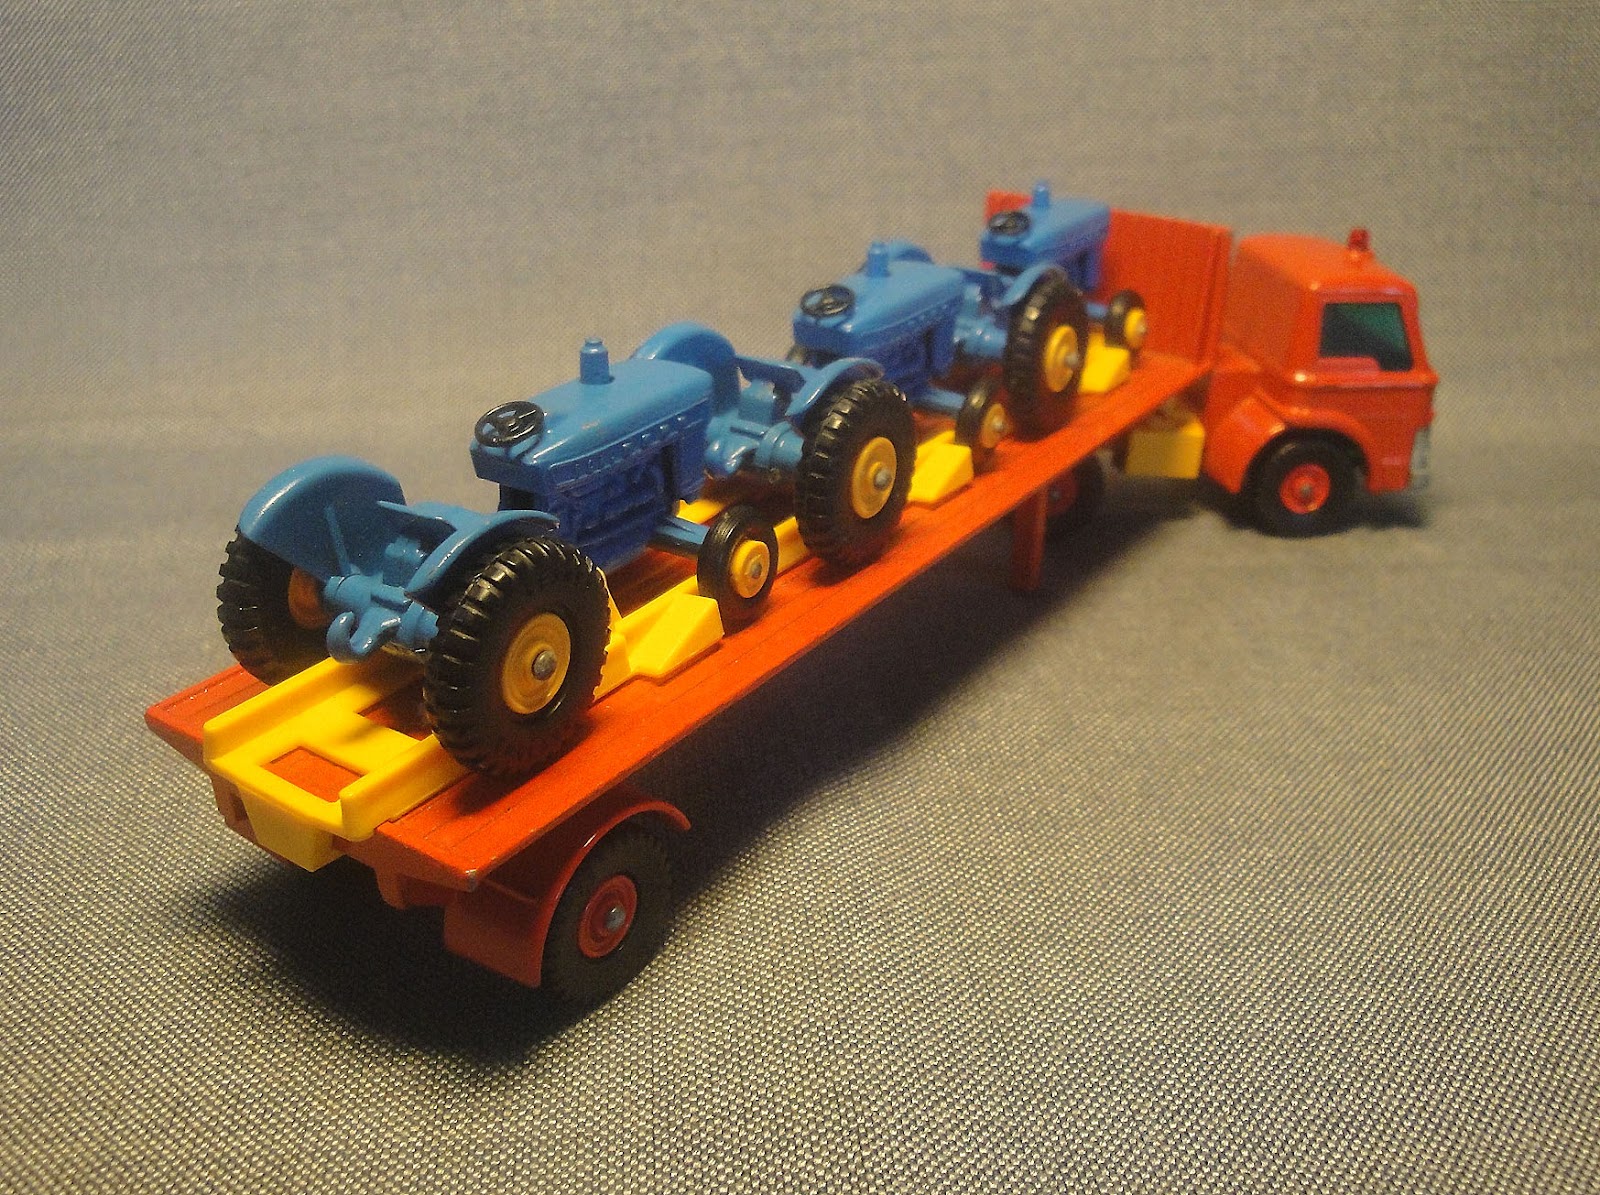 The Steam locomotive (LEGO Orient Express), Ruben Messerschmidt